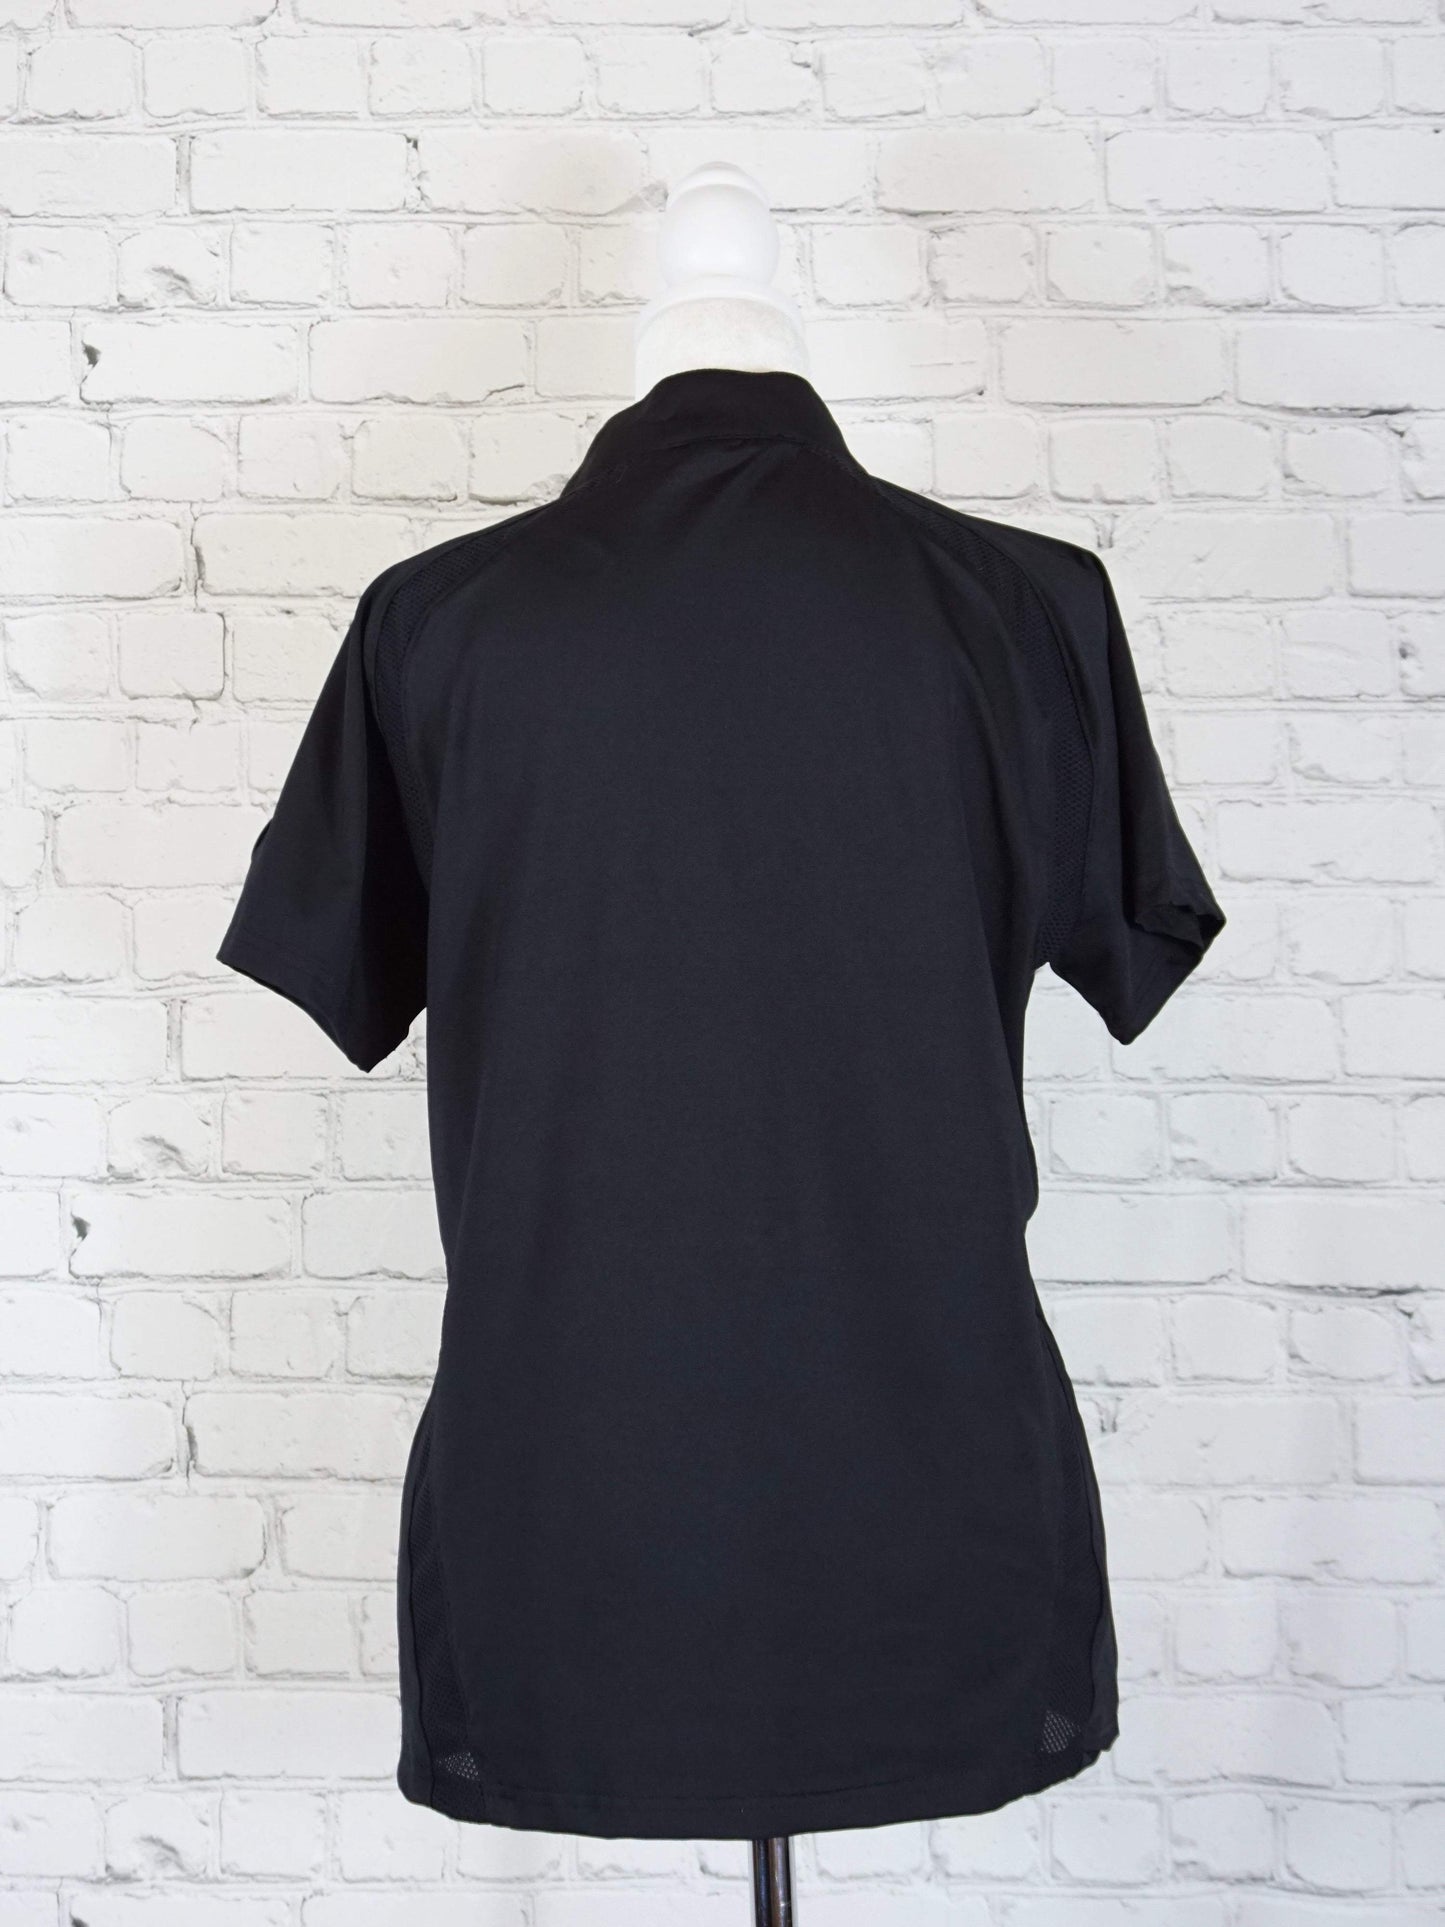 Horze Women's Moisture Wicking Short Sleeve Zip Polo in Black- Large